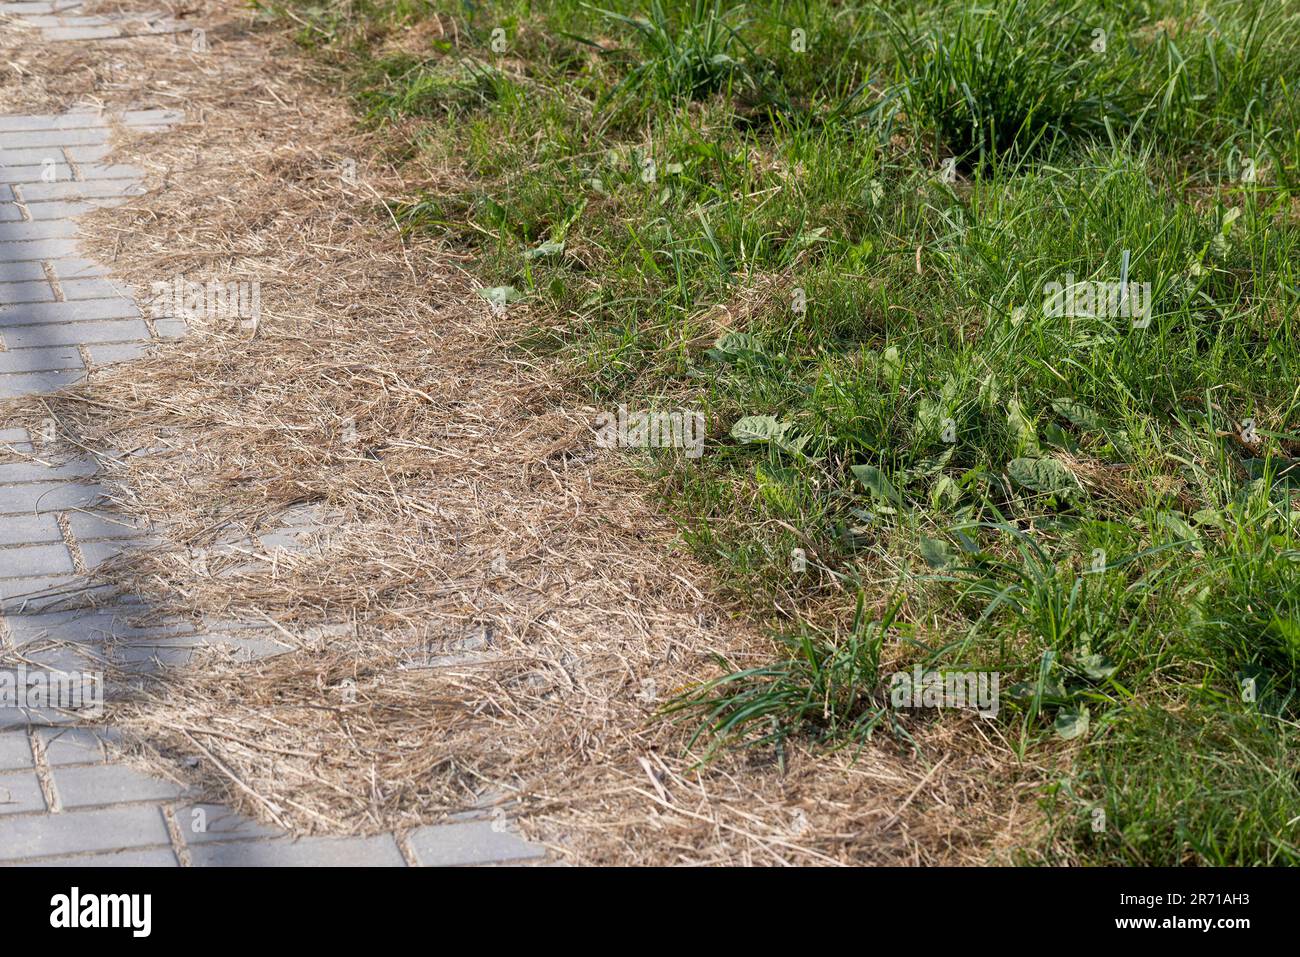 Un sentiero pedonale fatto di tegole di cemento con erba, erba che cresce attraverso le cuciture sulla piastrella stradale Foto Stock